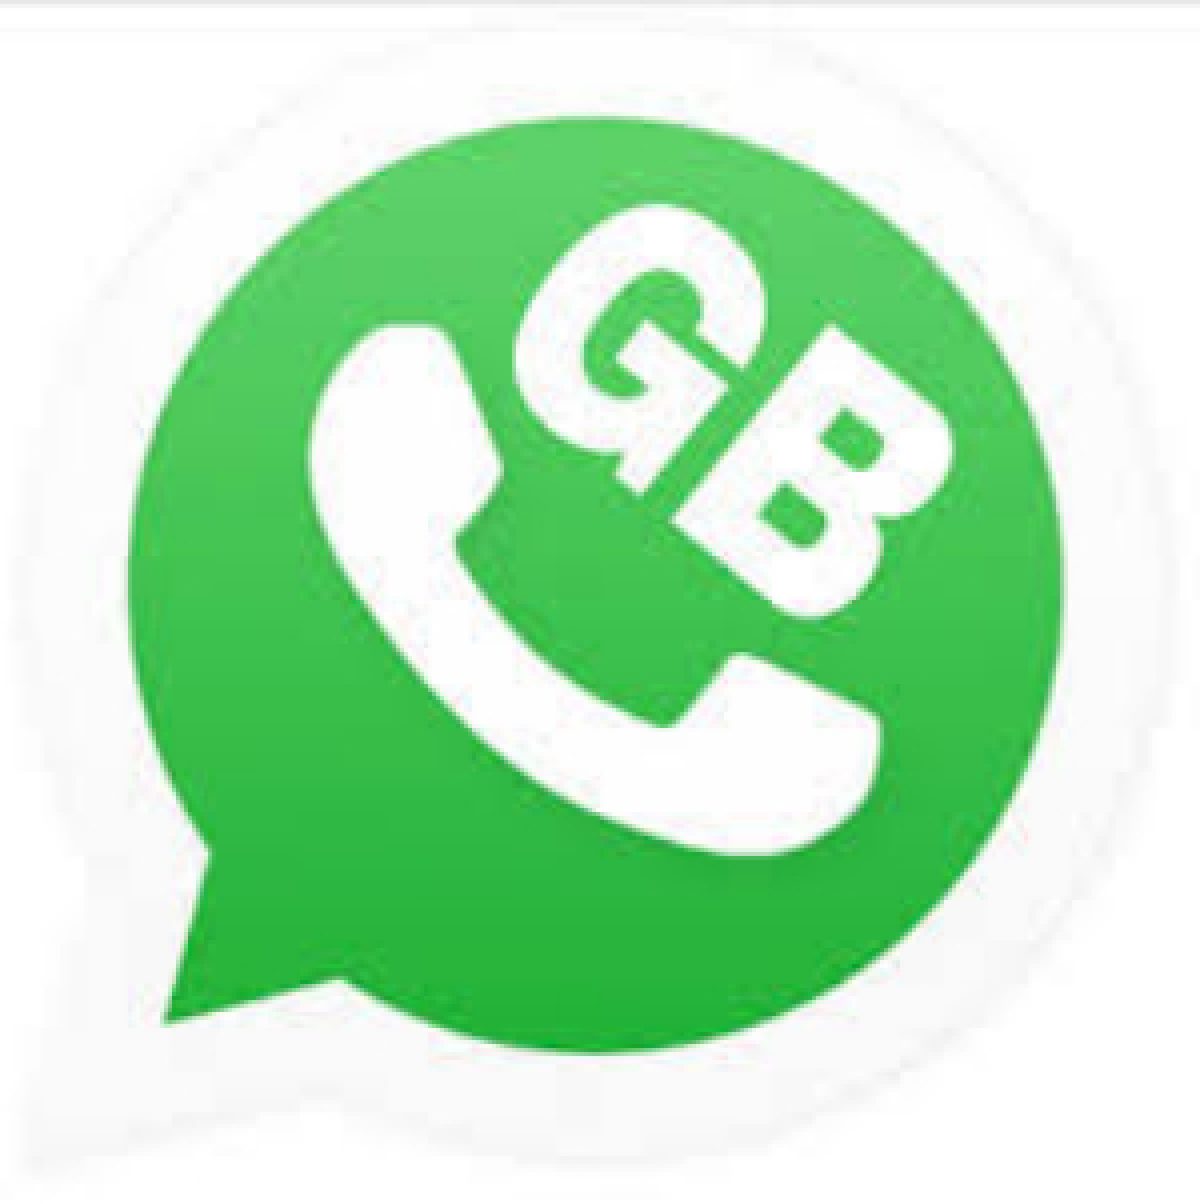 cara megunci aplikasi whatsapp neggunakan aplikasi GB whatsapp